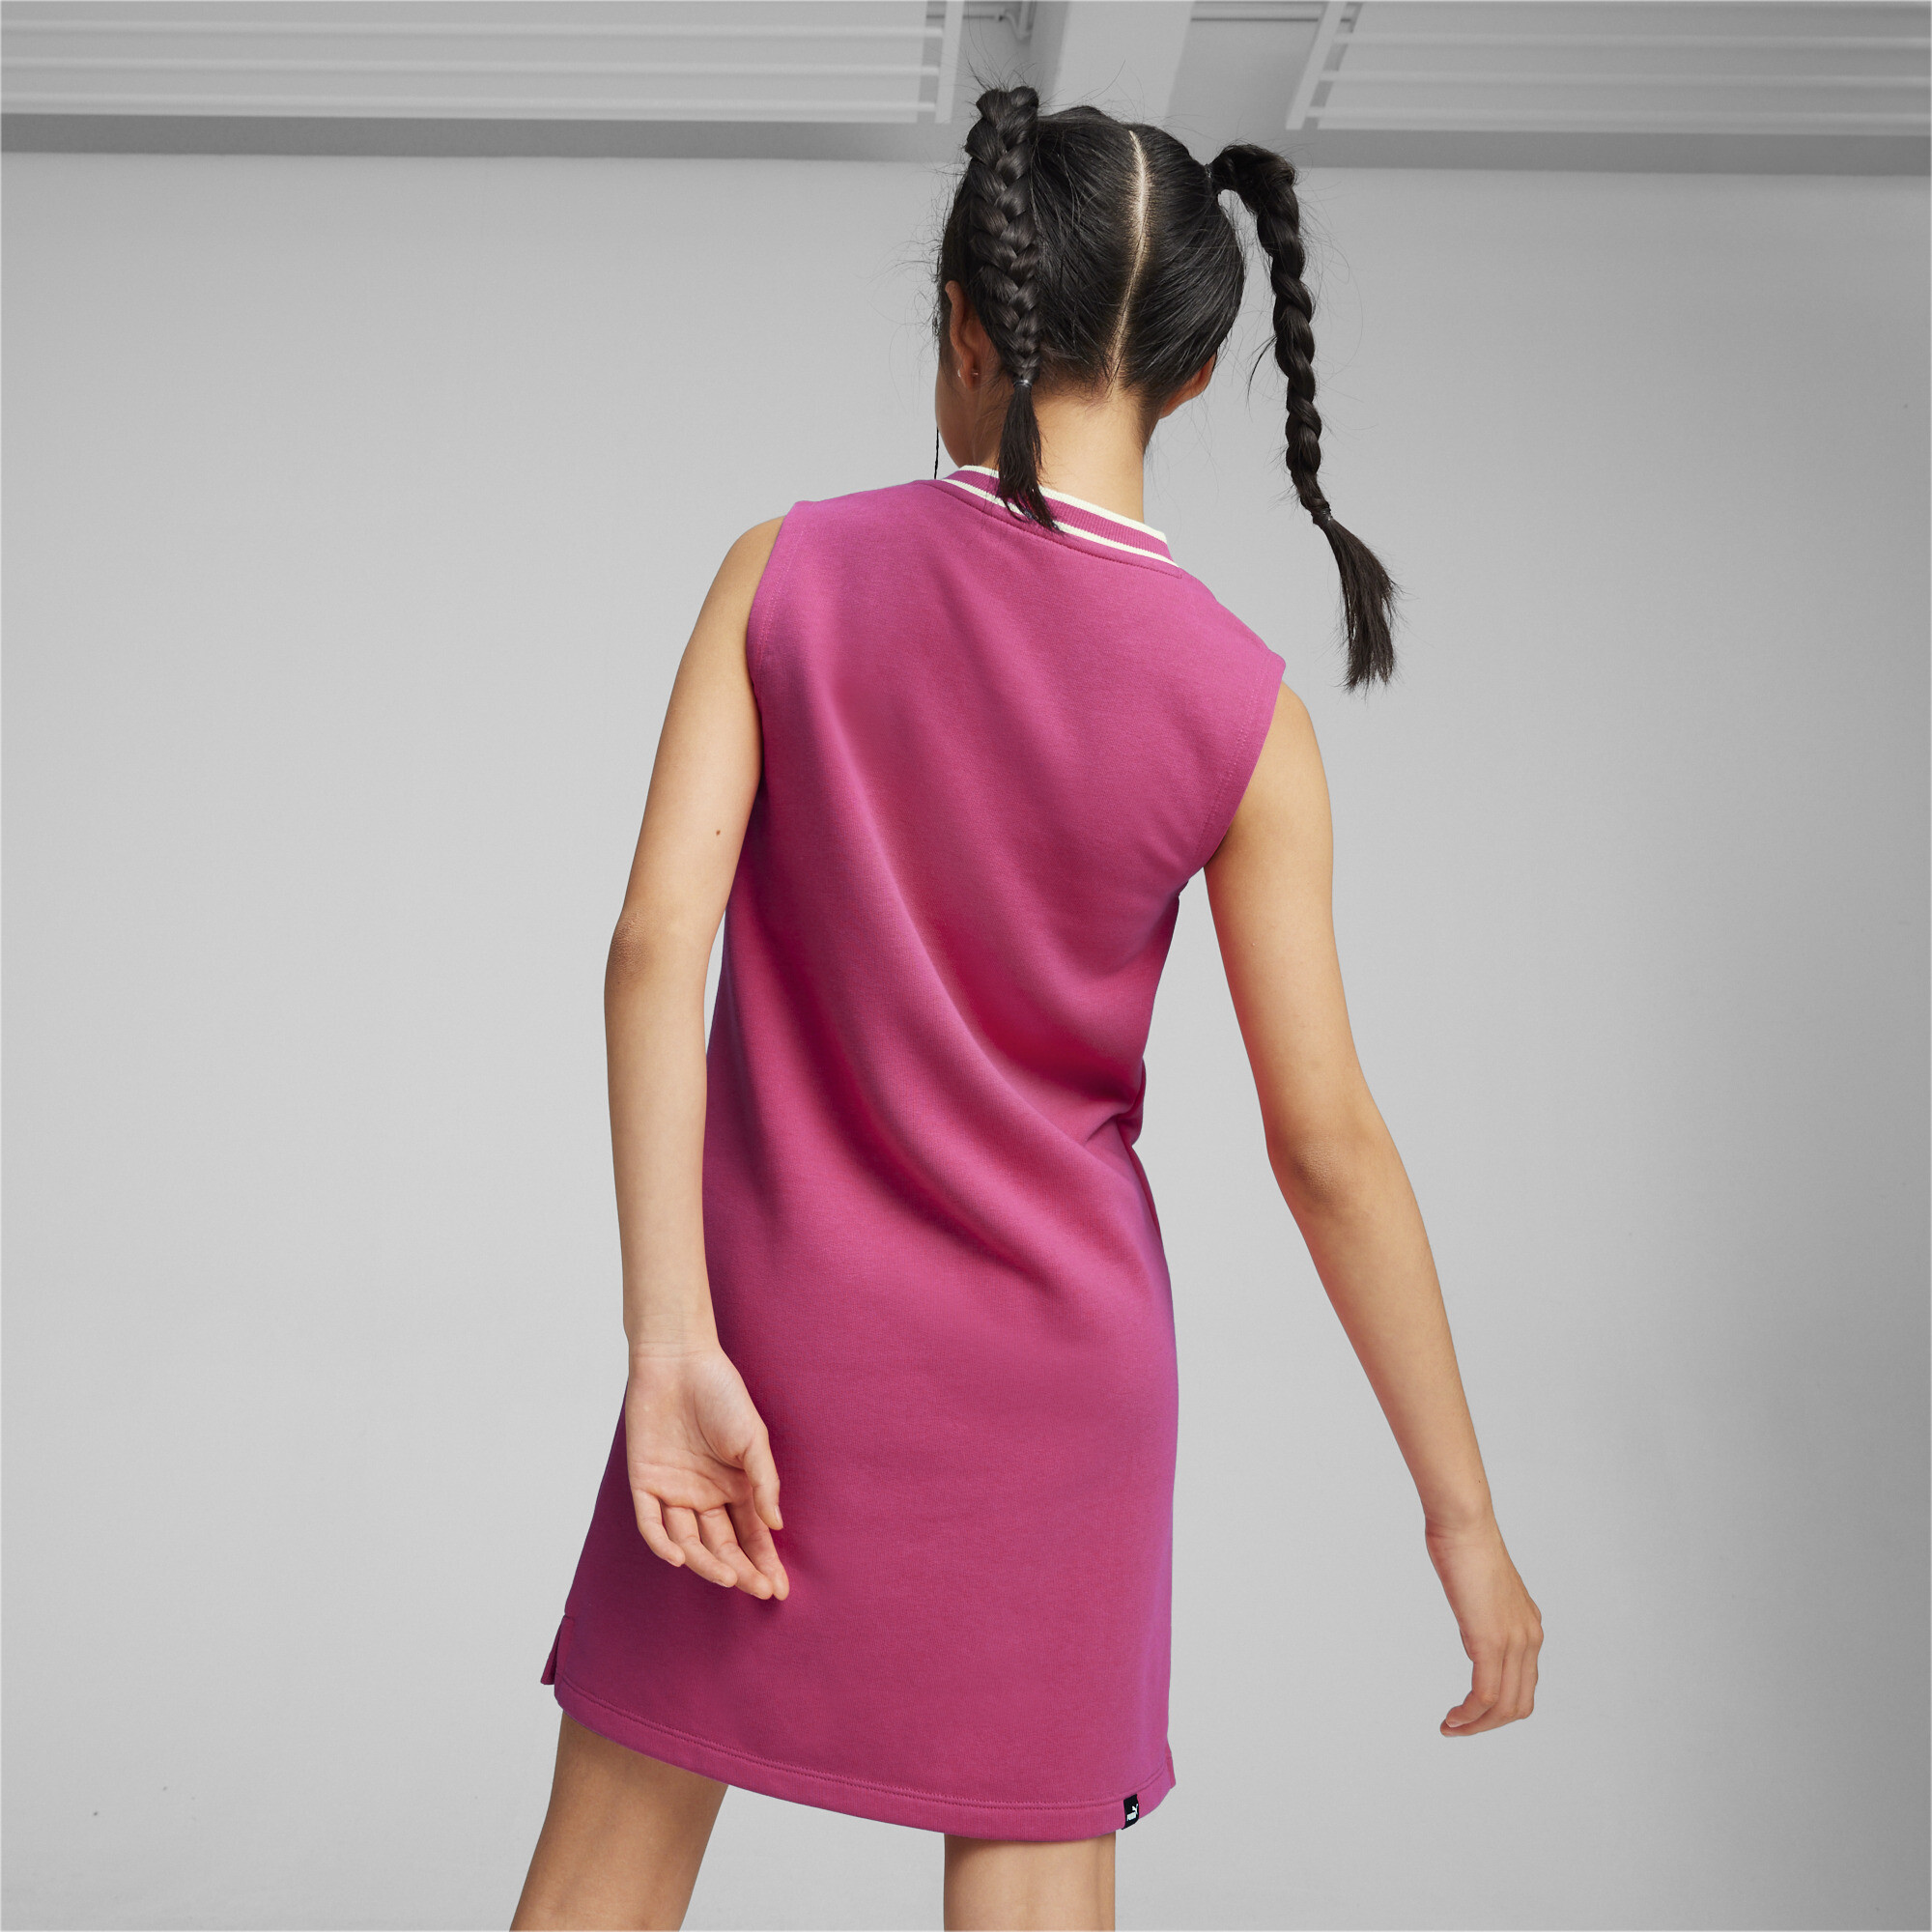 Puma SQUAD Girls' Dress, Pink, Size 7-8Y, Clothing